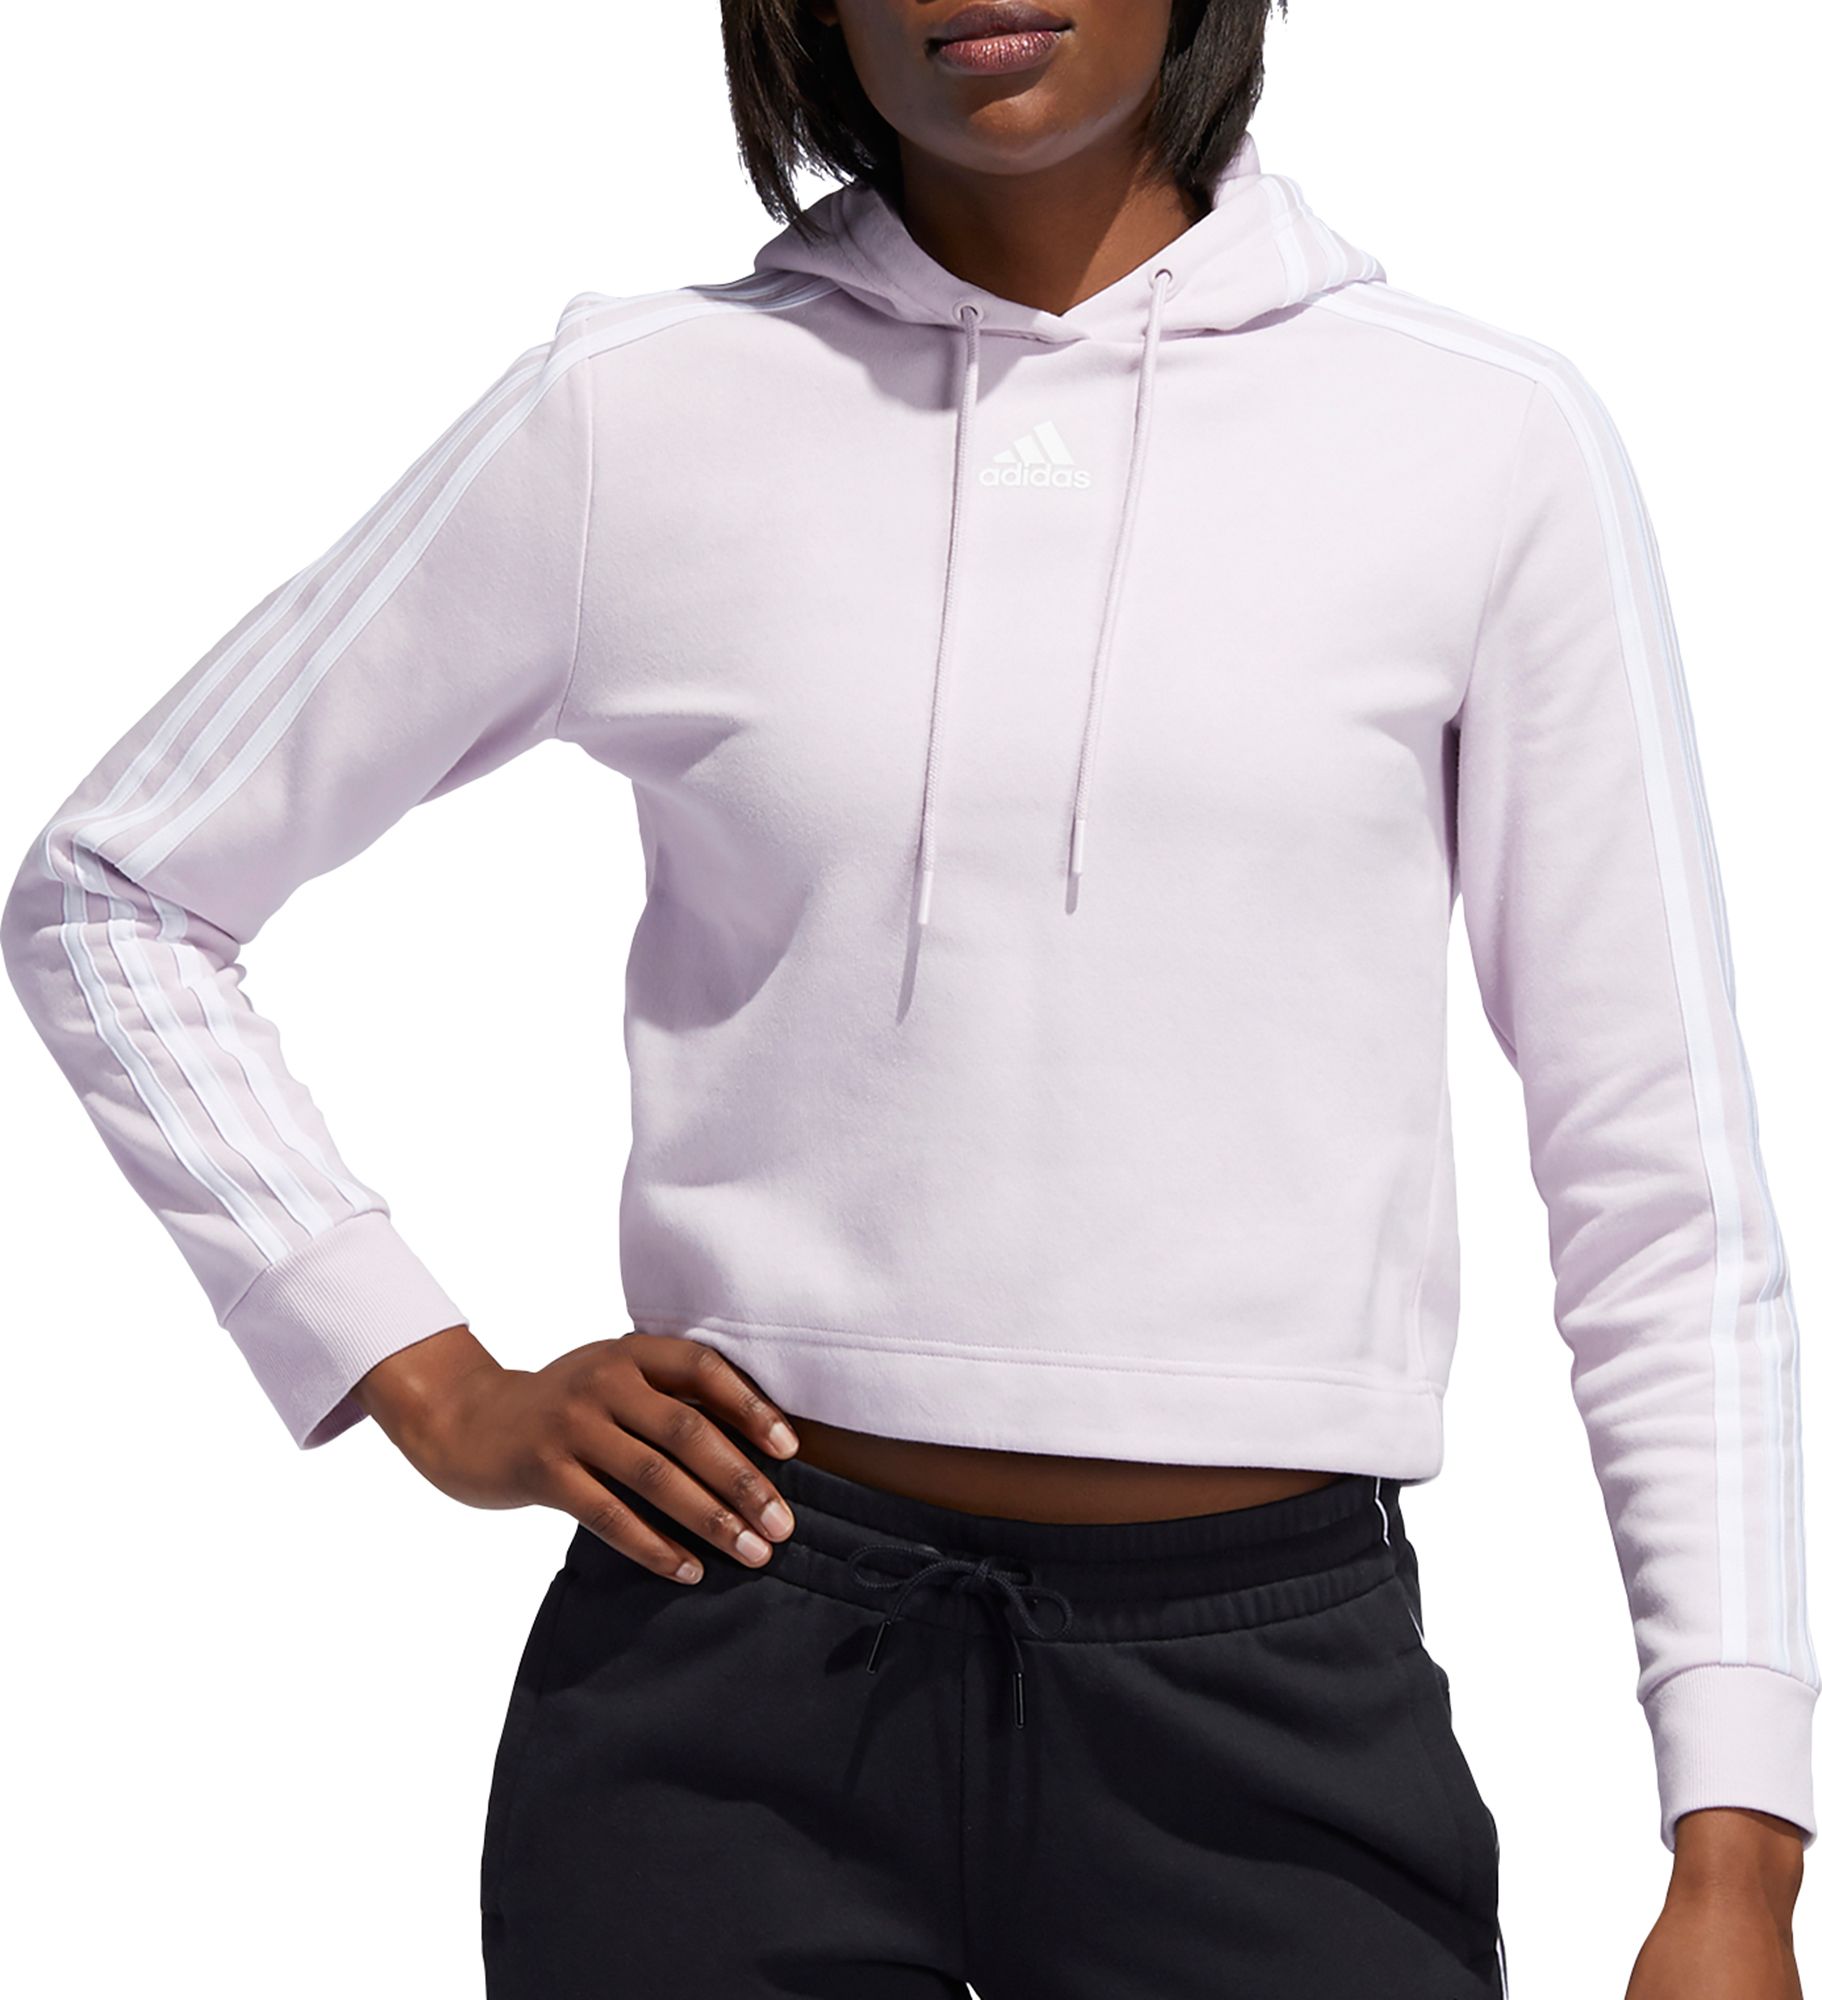 adidas women's post game fleece pullover hoodie